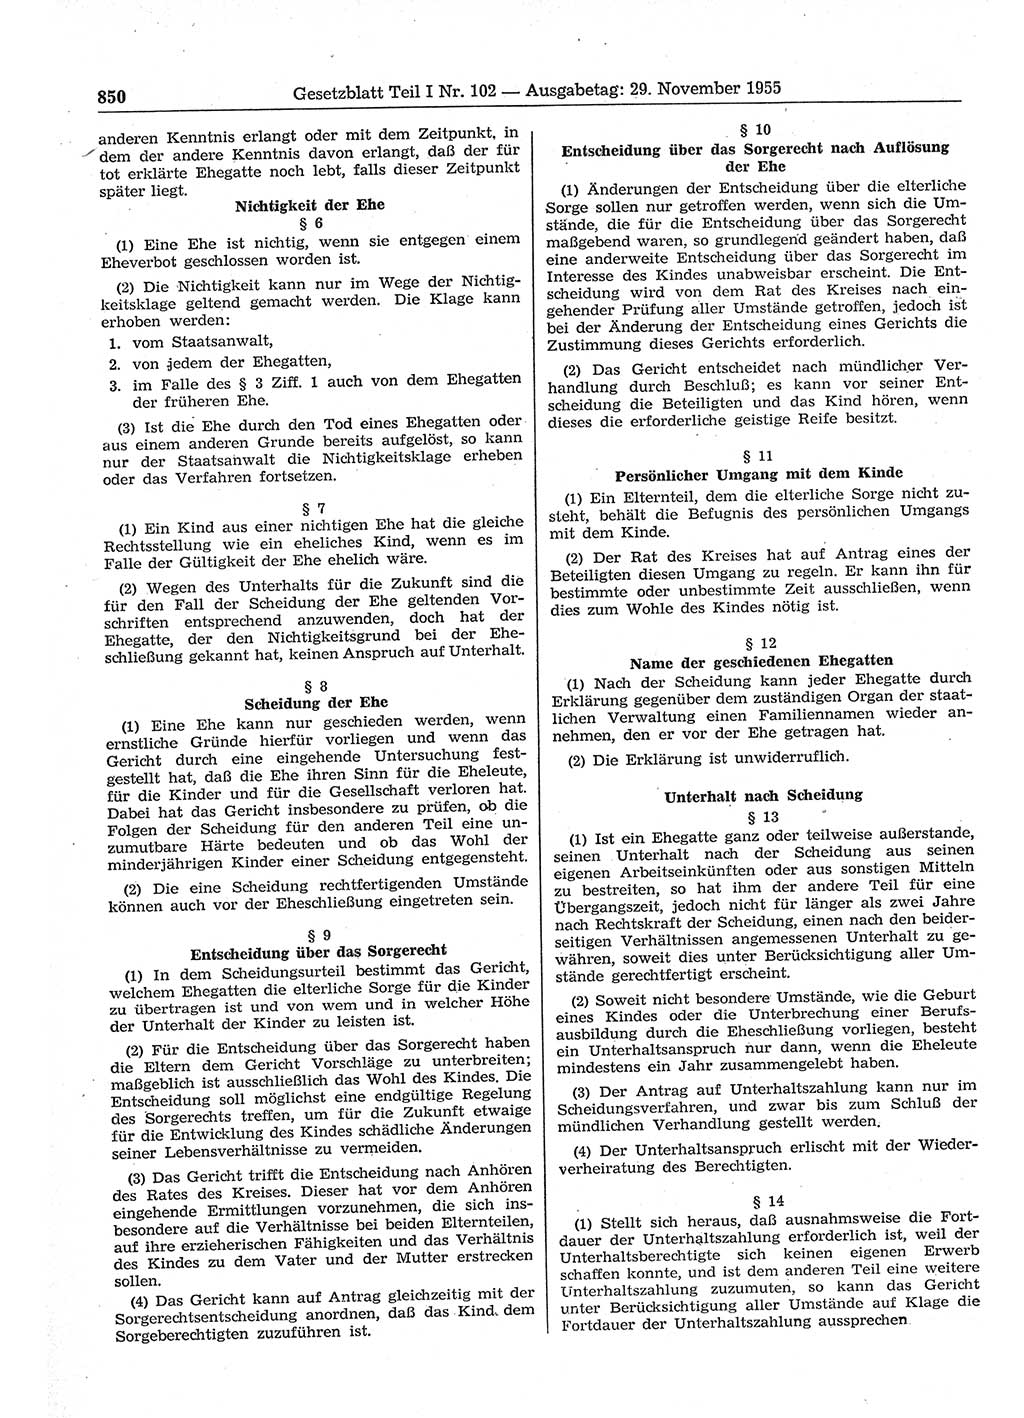 Gesetzblatt (GBl.) der Deutschen Demokratischen Republik (DDR) Teil Ⅰ 1955, Seite 850 (GBl. DDR Ⅰ 1955, S. 850)